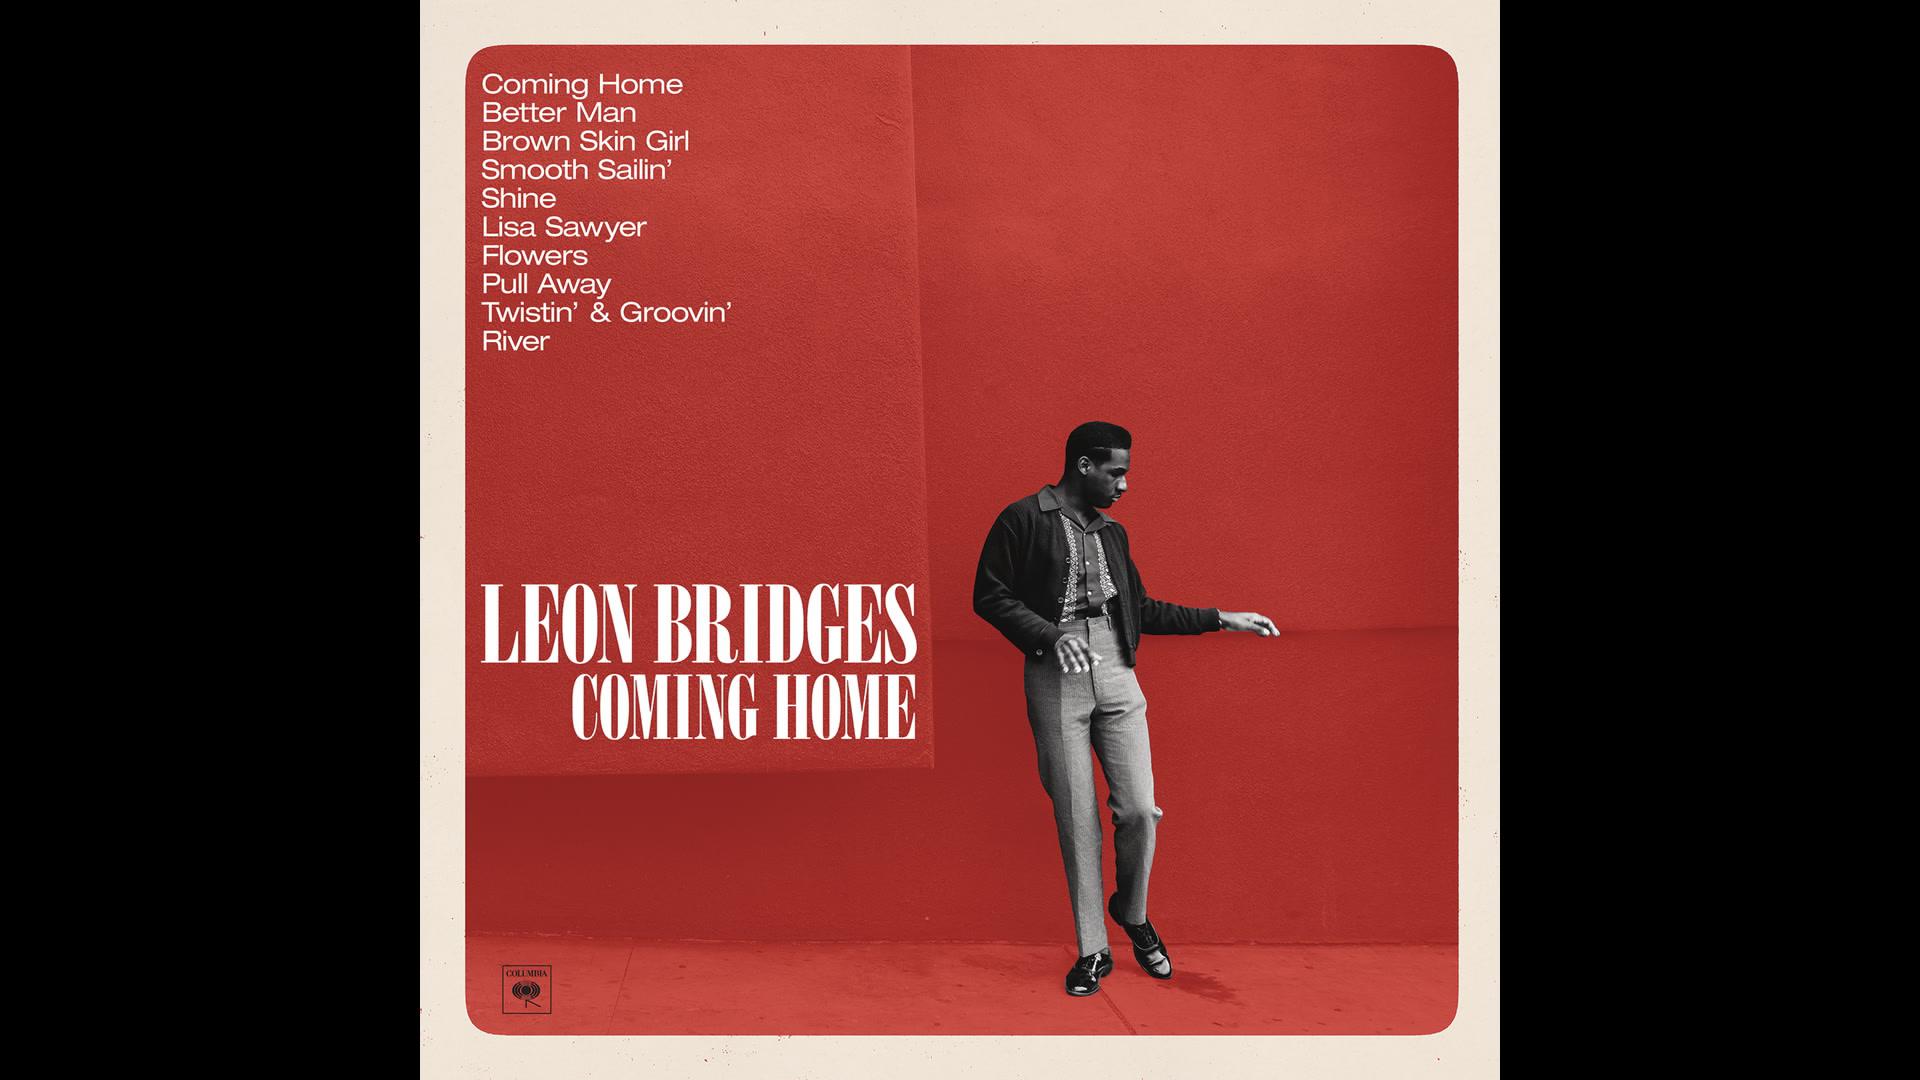 Leon Bridges - Shine (Official Audio)